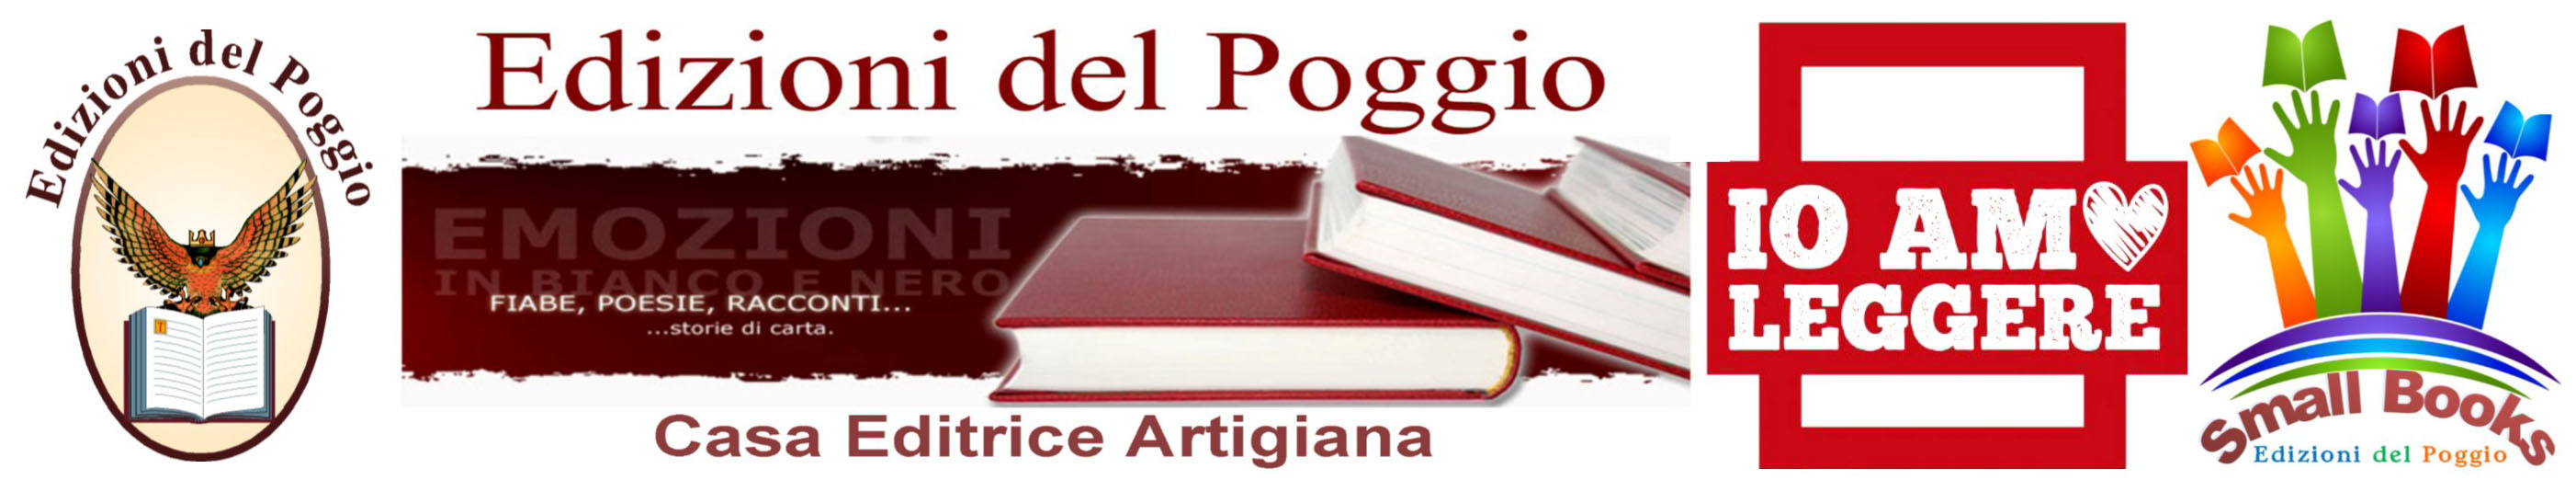 Edizioni del Poggio by Digital BT di Tozzi